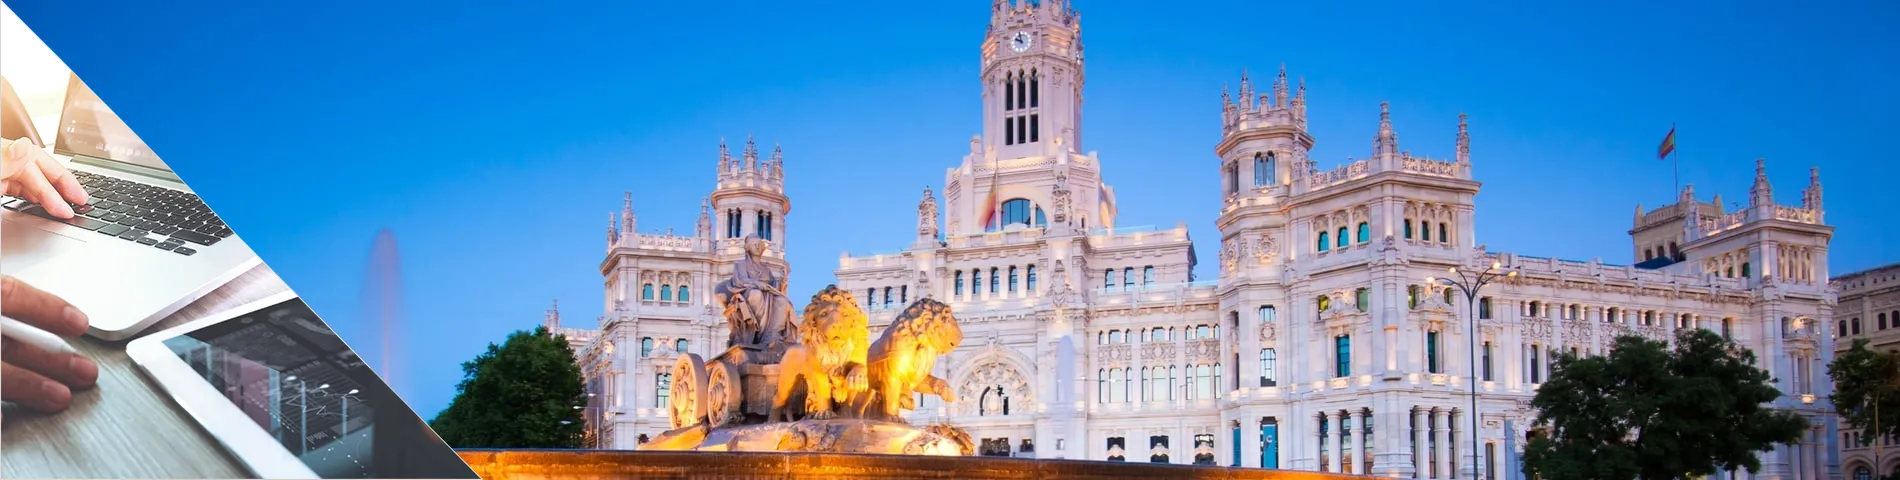 Madrid - Spagnolo & Digital Media